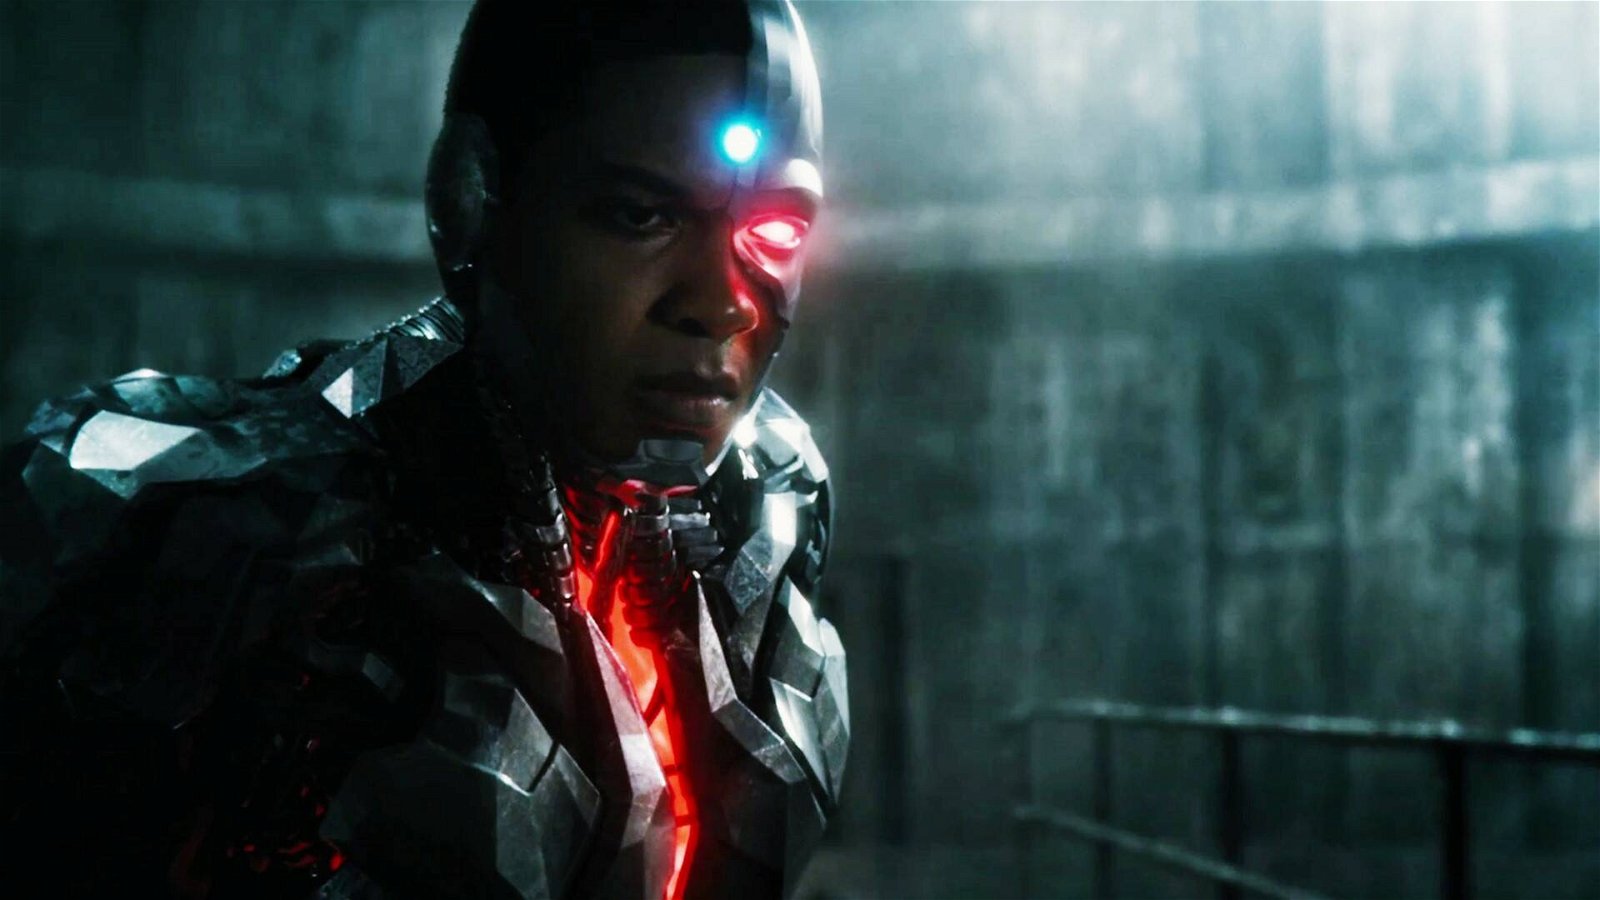 Immagine di Ray Fisher vorrebbe Rick Famuyiwa a dirigere un film di Cyborg